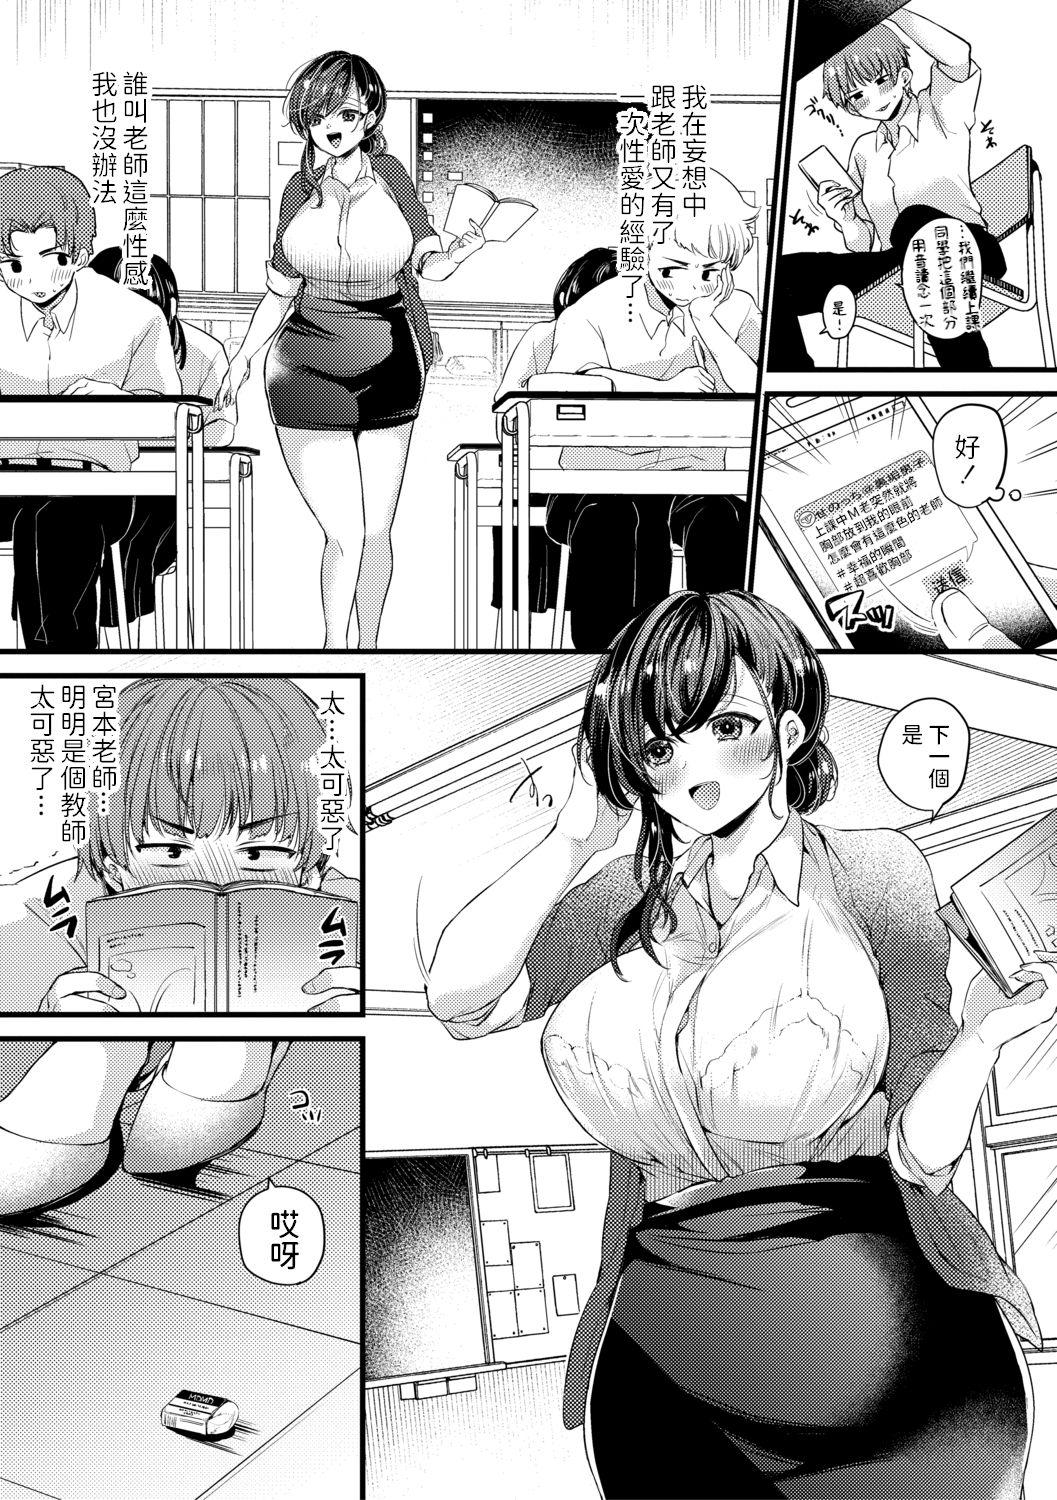 Jacking Off Genjitsu wa Uraaka yori Ecchi nari Letsdoeit - Page 3